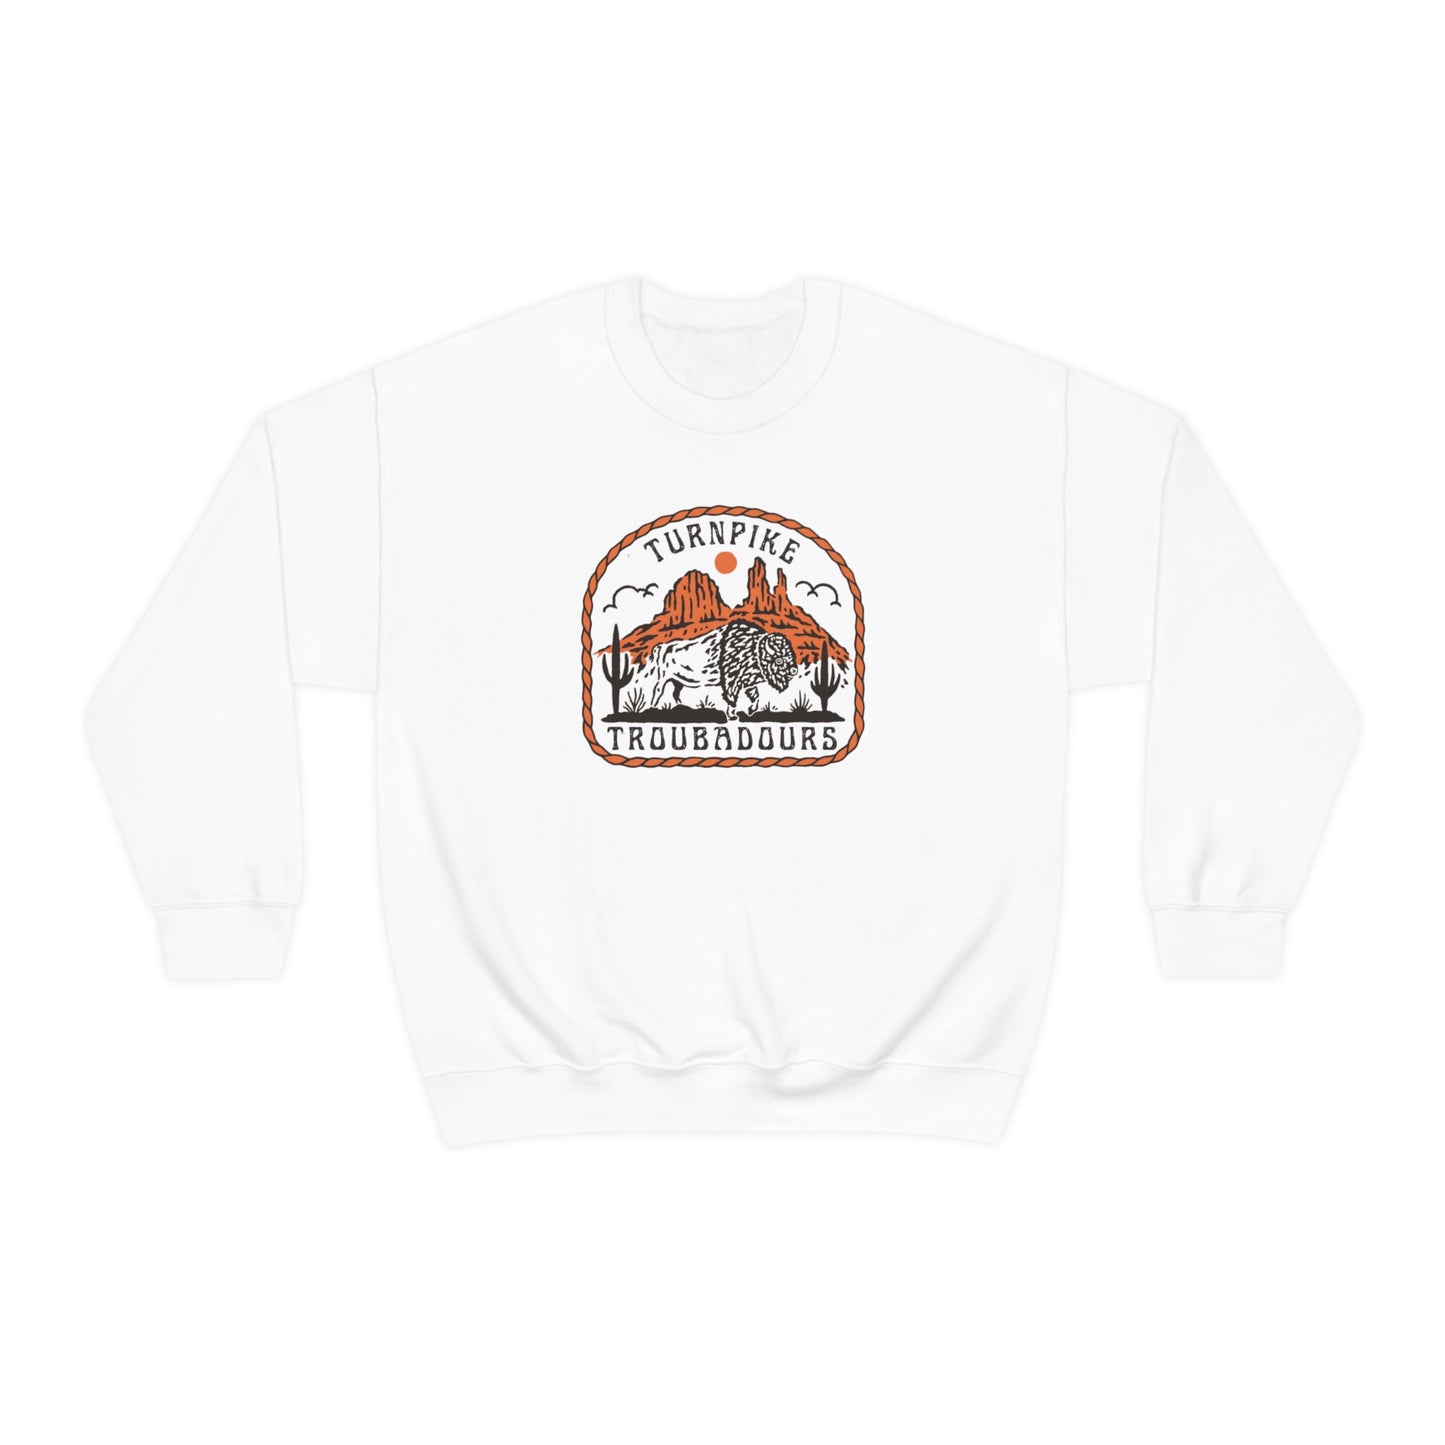 Turnpike Troubadours Sweatshirt, Turnpike Troubadours merch, Zach Bryan shirt, Western Graphic Tshirt, Zach Bryan Gift Idea